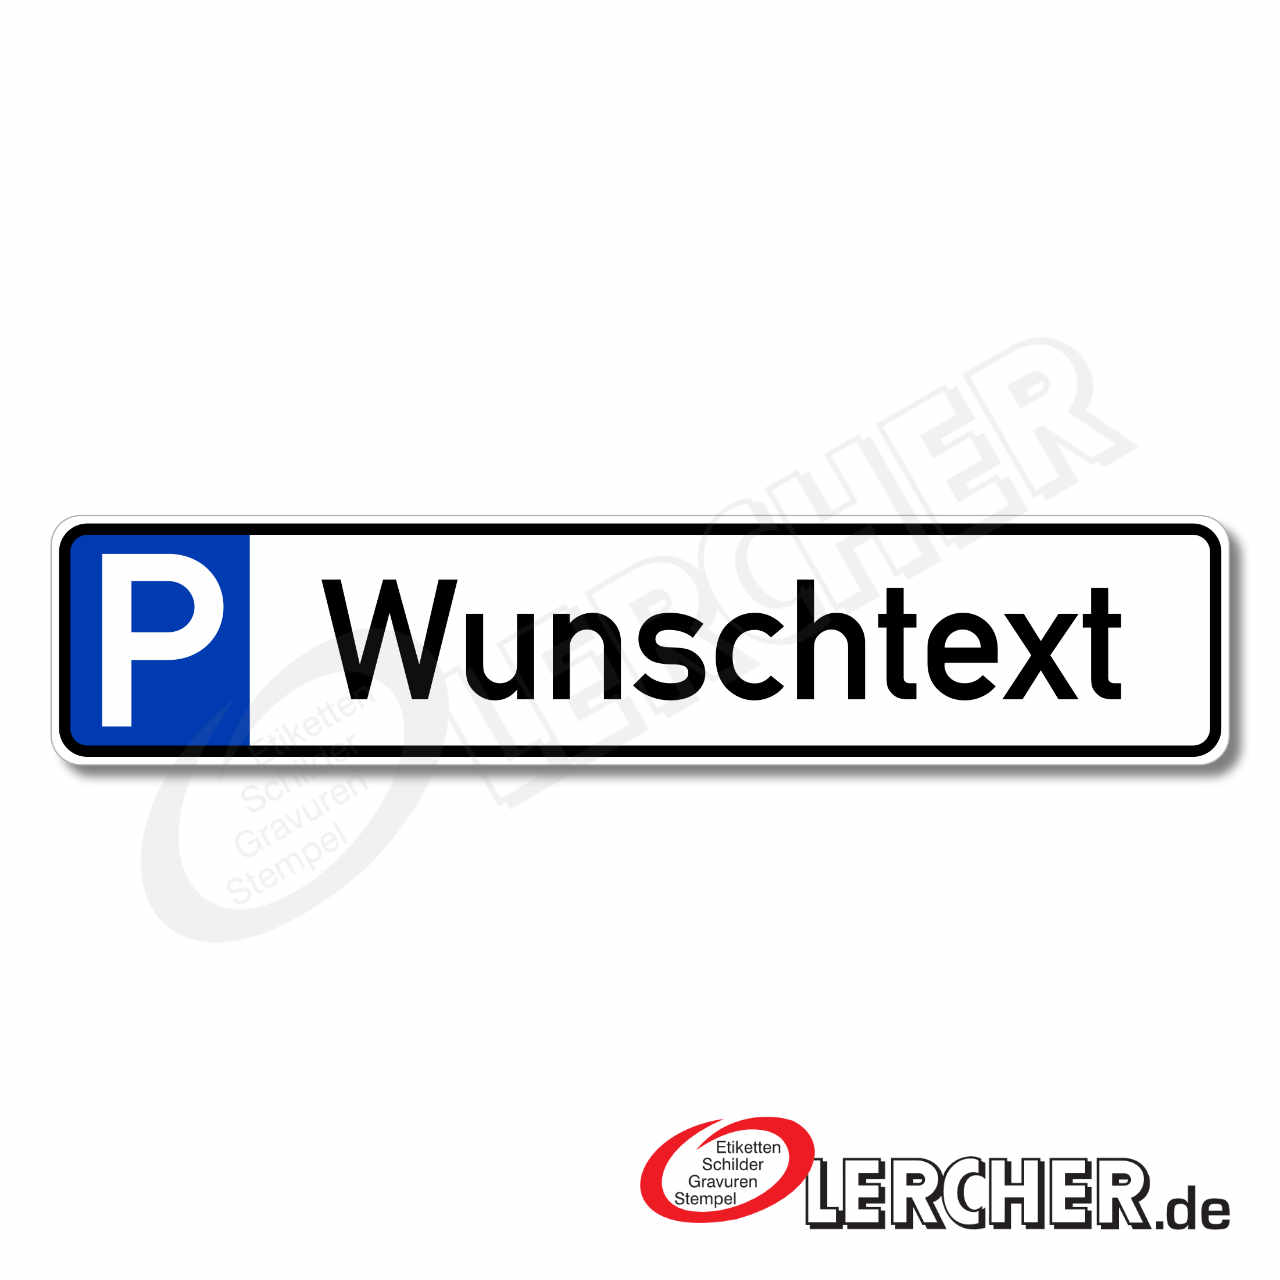 https://www.lercher.de/media/9d/08/50/1684151948/parkplatz-reservierer-jpg-14-0395db520110-00.jpg